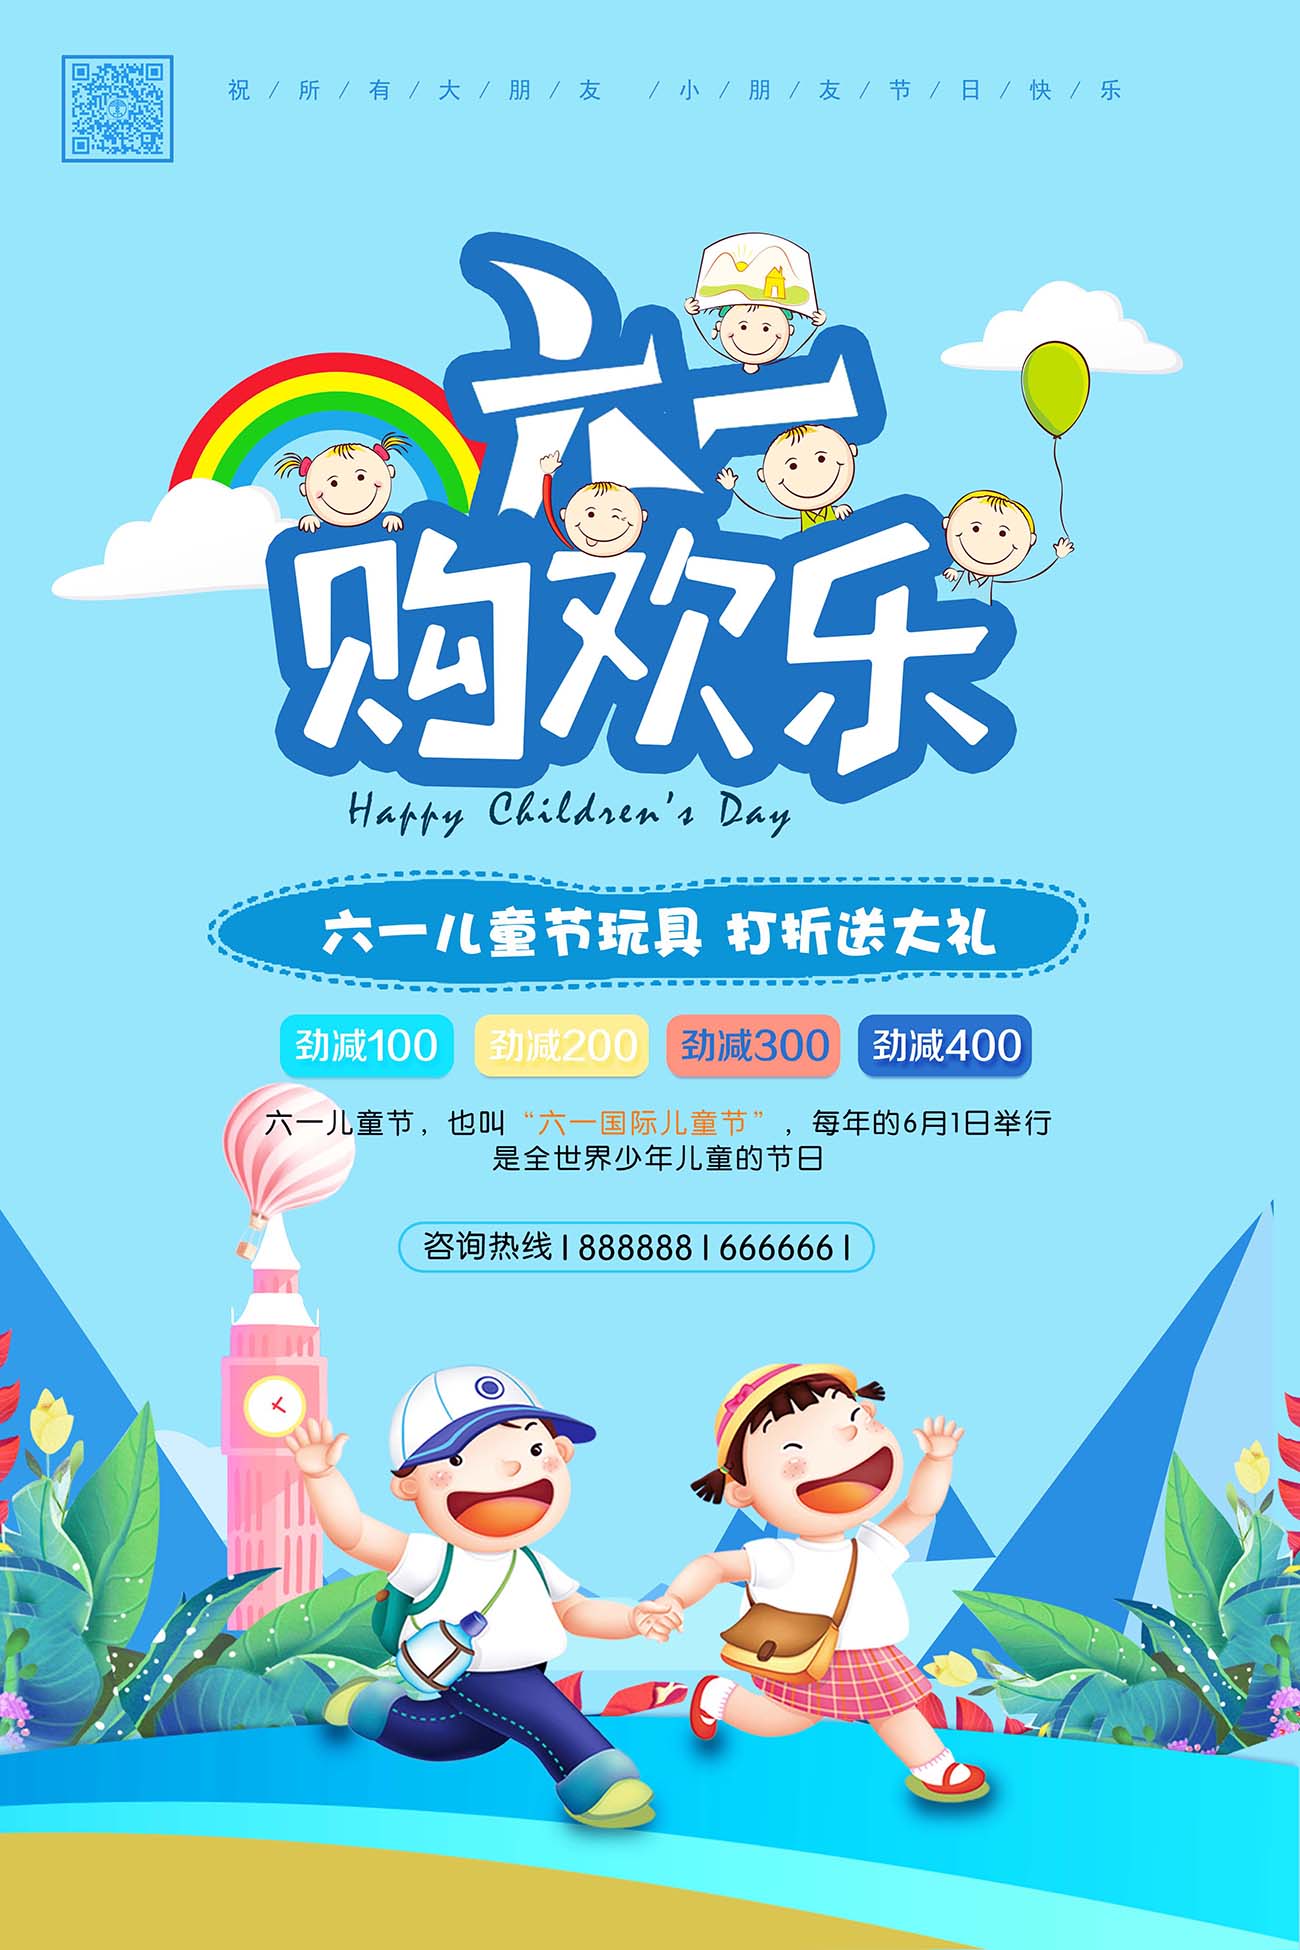 六一61儿童节购欢乐玩具打折促销海报设计PSD源文件